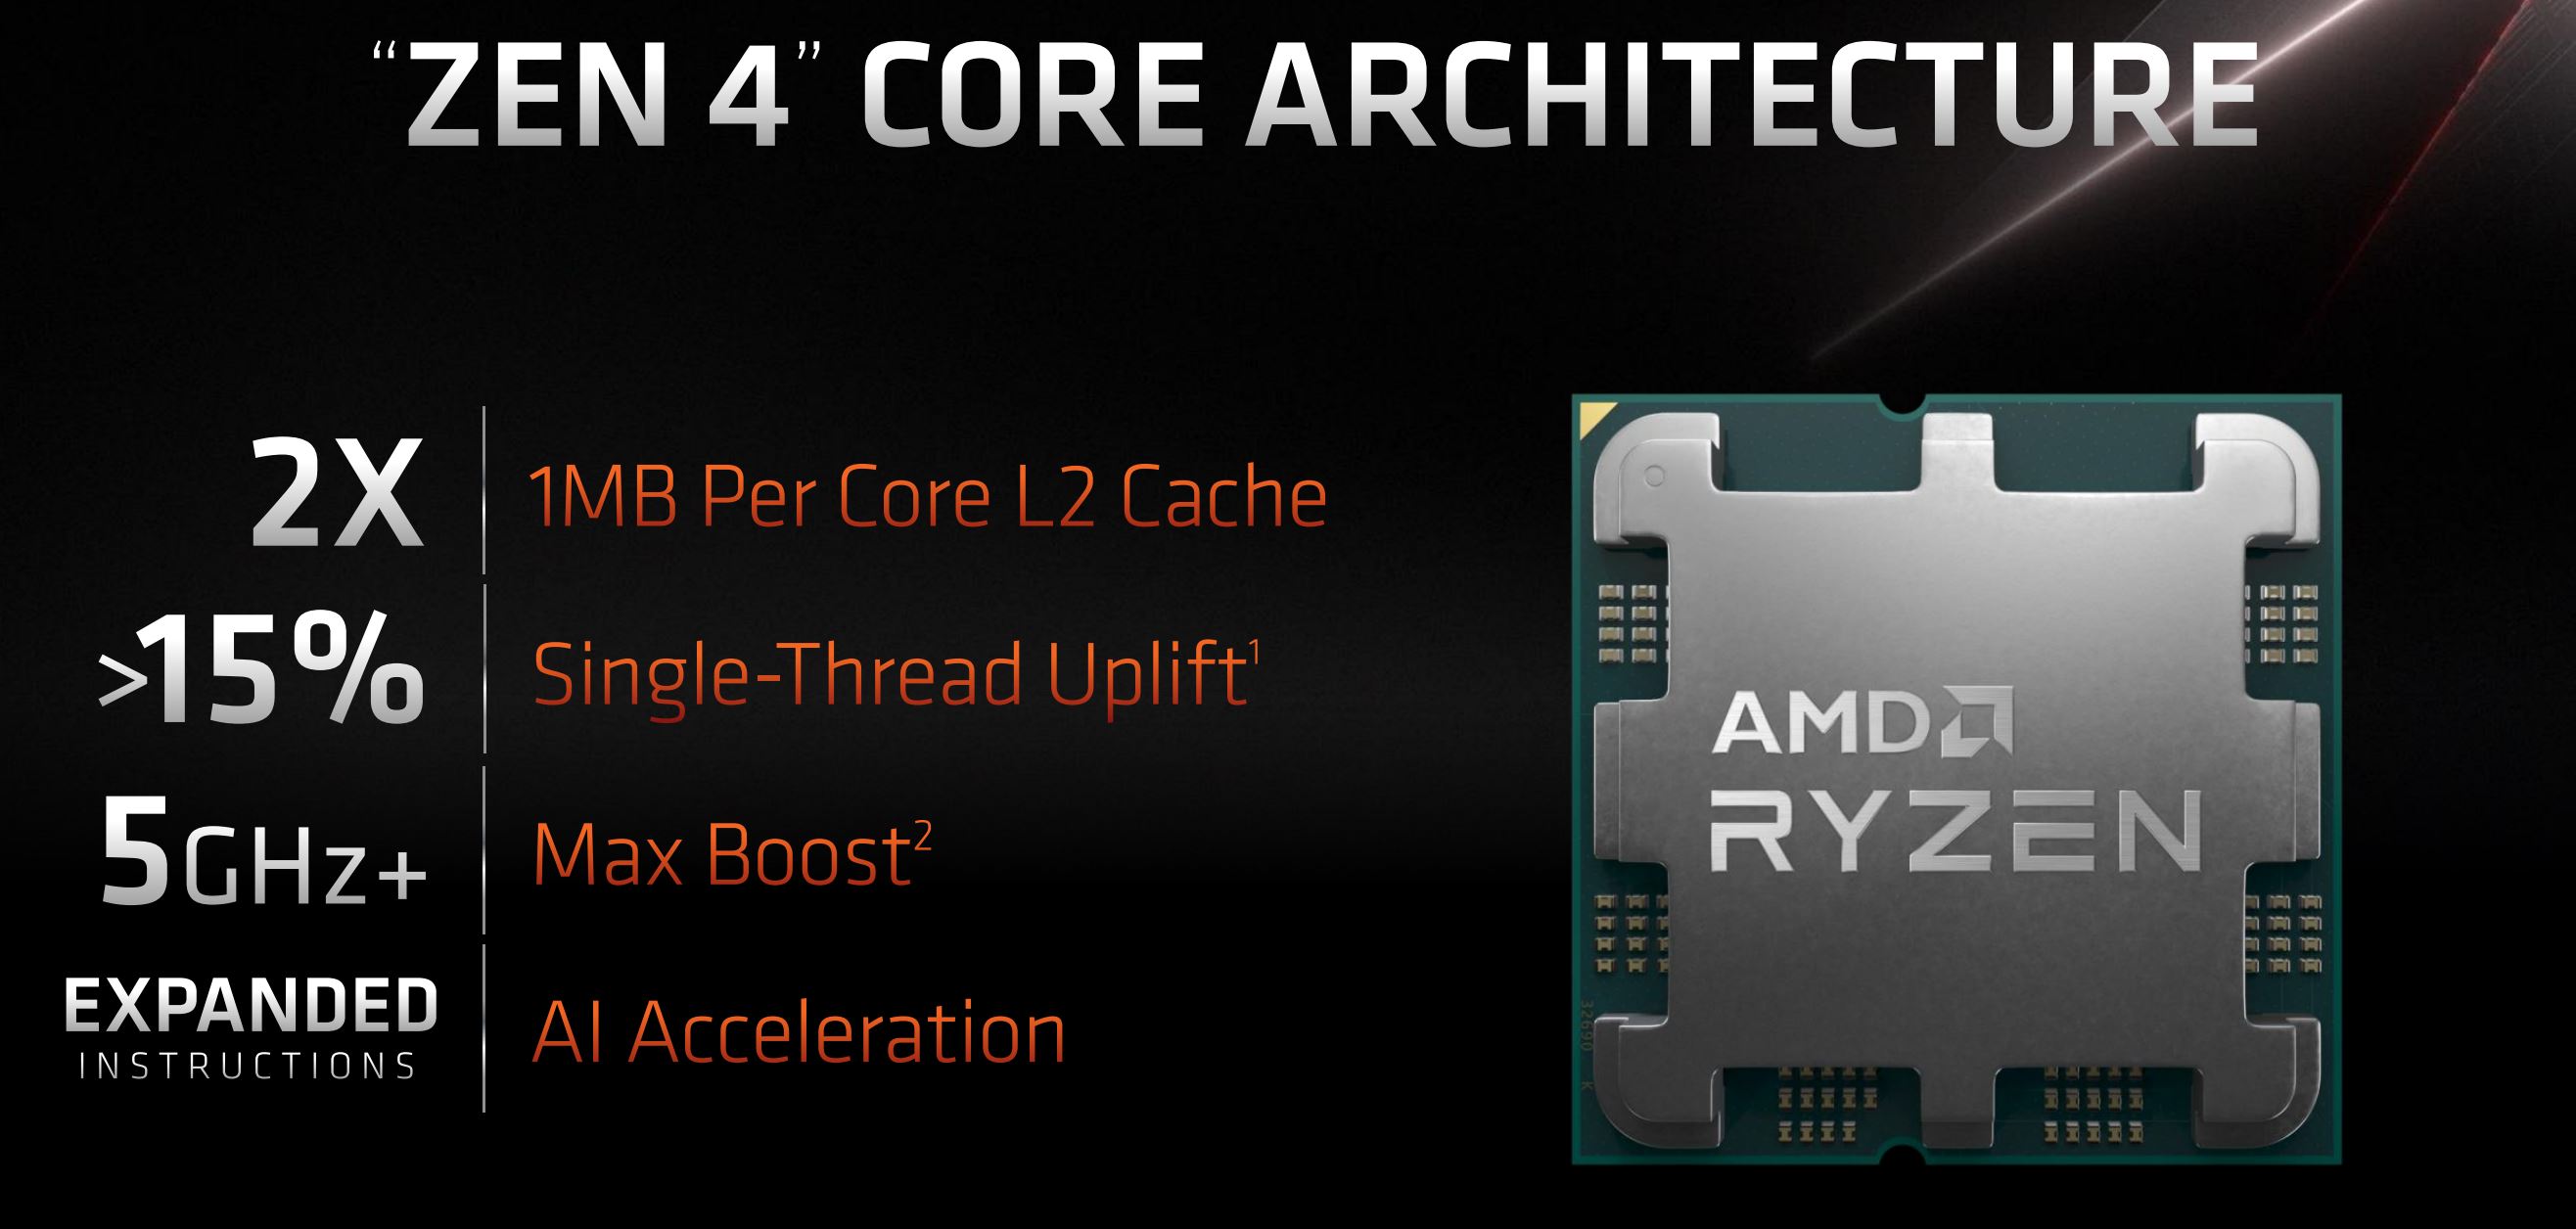 AMD Ryzen 7000 – Zen 4